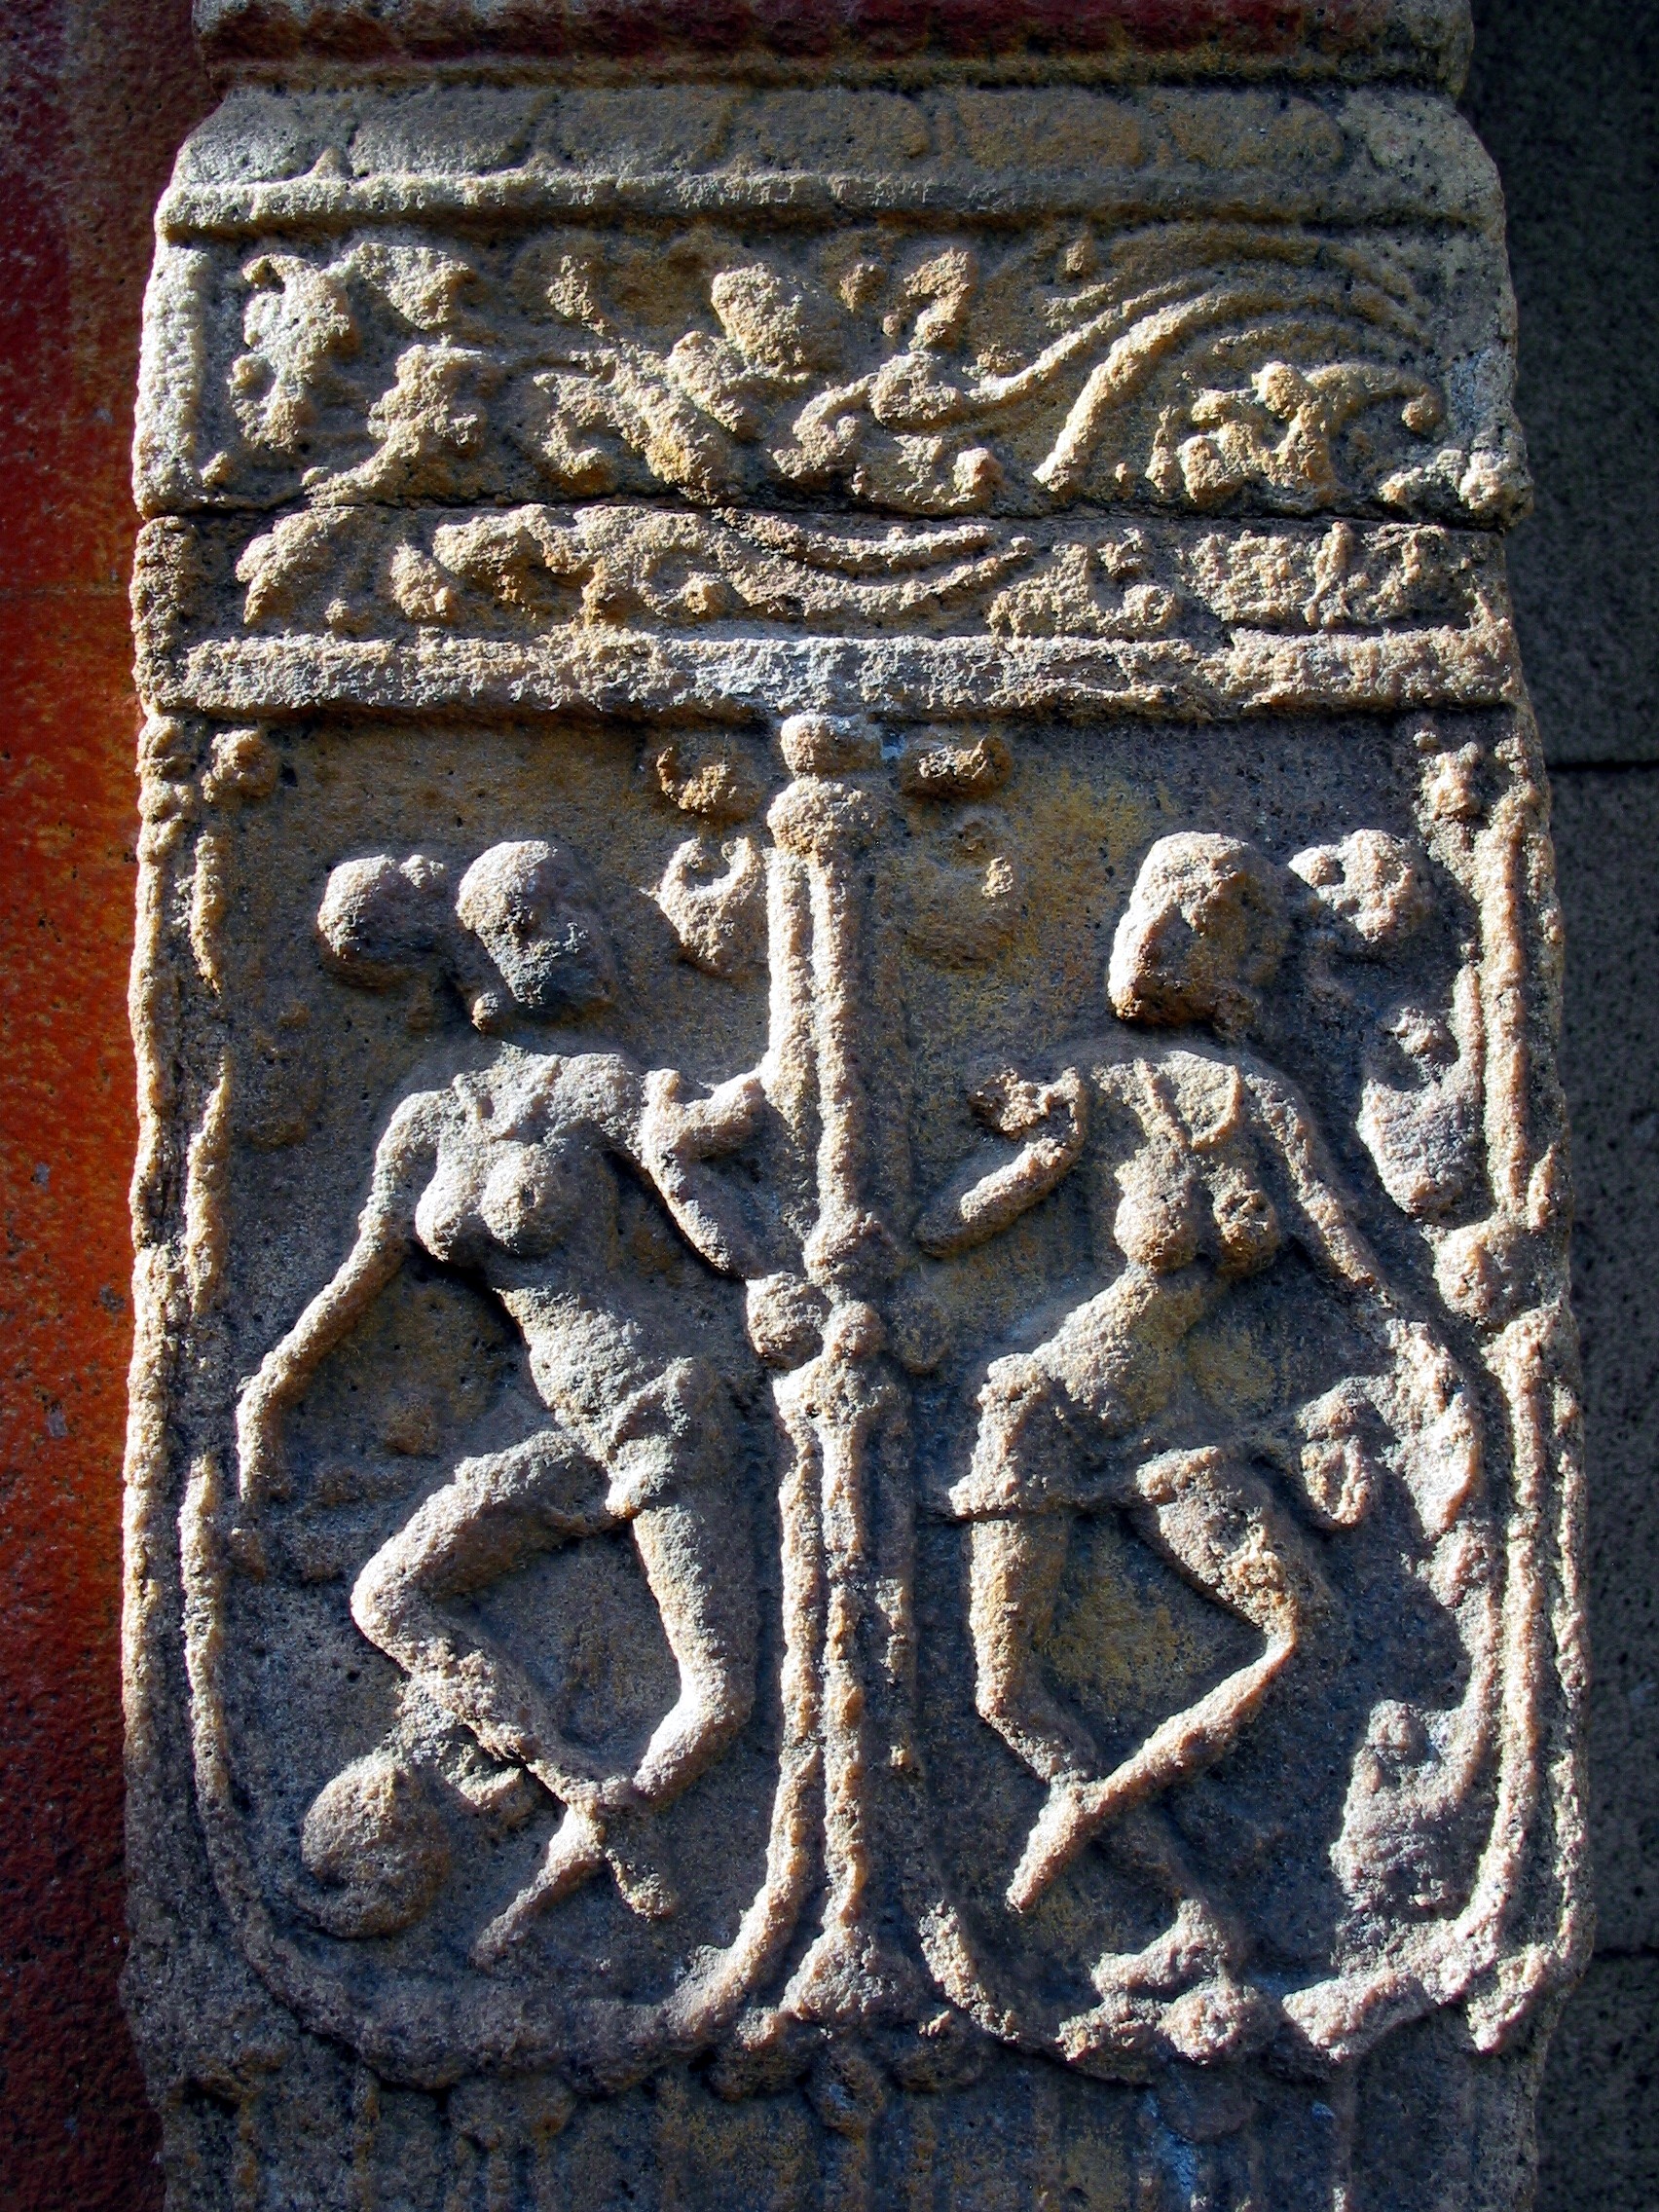 Rudragaṇikā : Les courtisanes du temple shivaïte ? Quelques sources anciennes jusqu’ici négligées